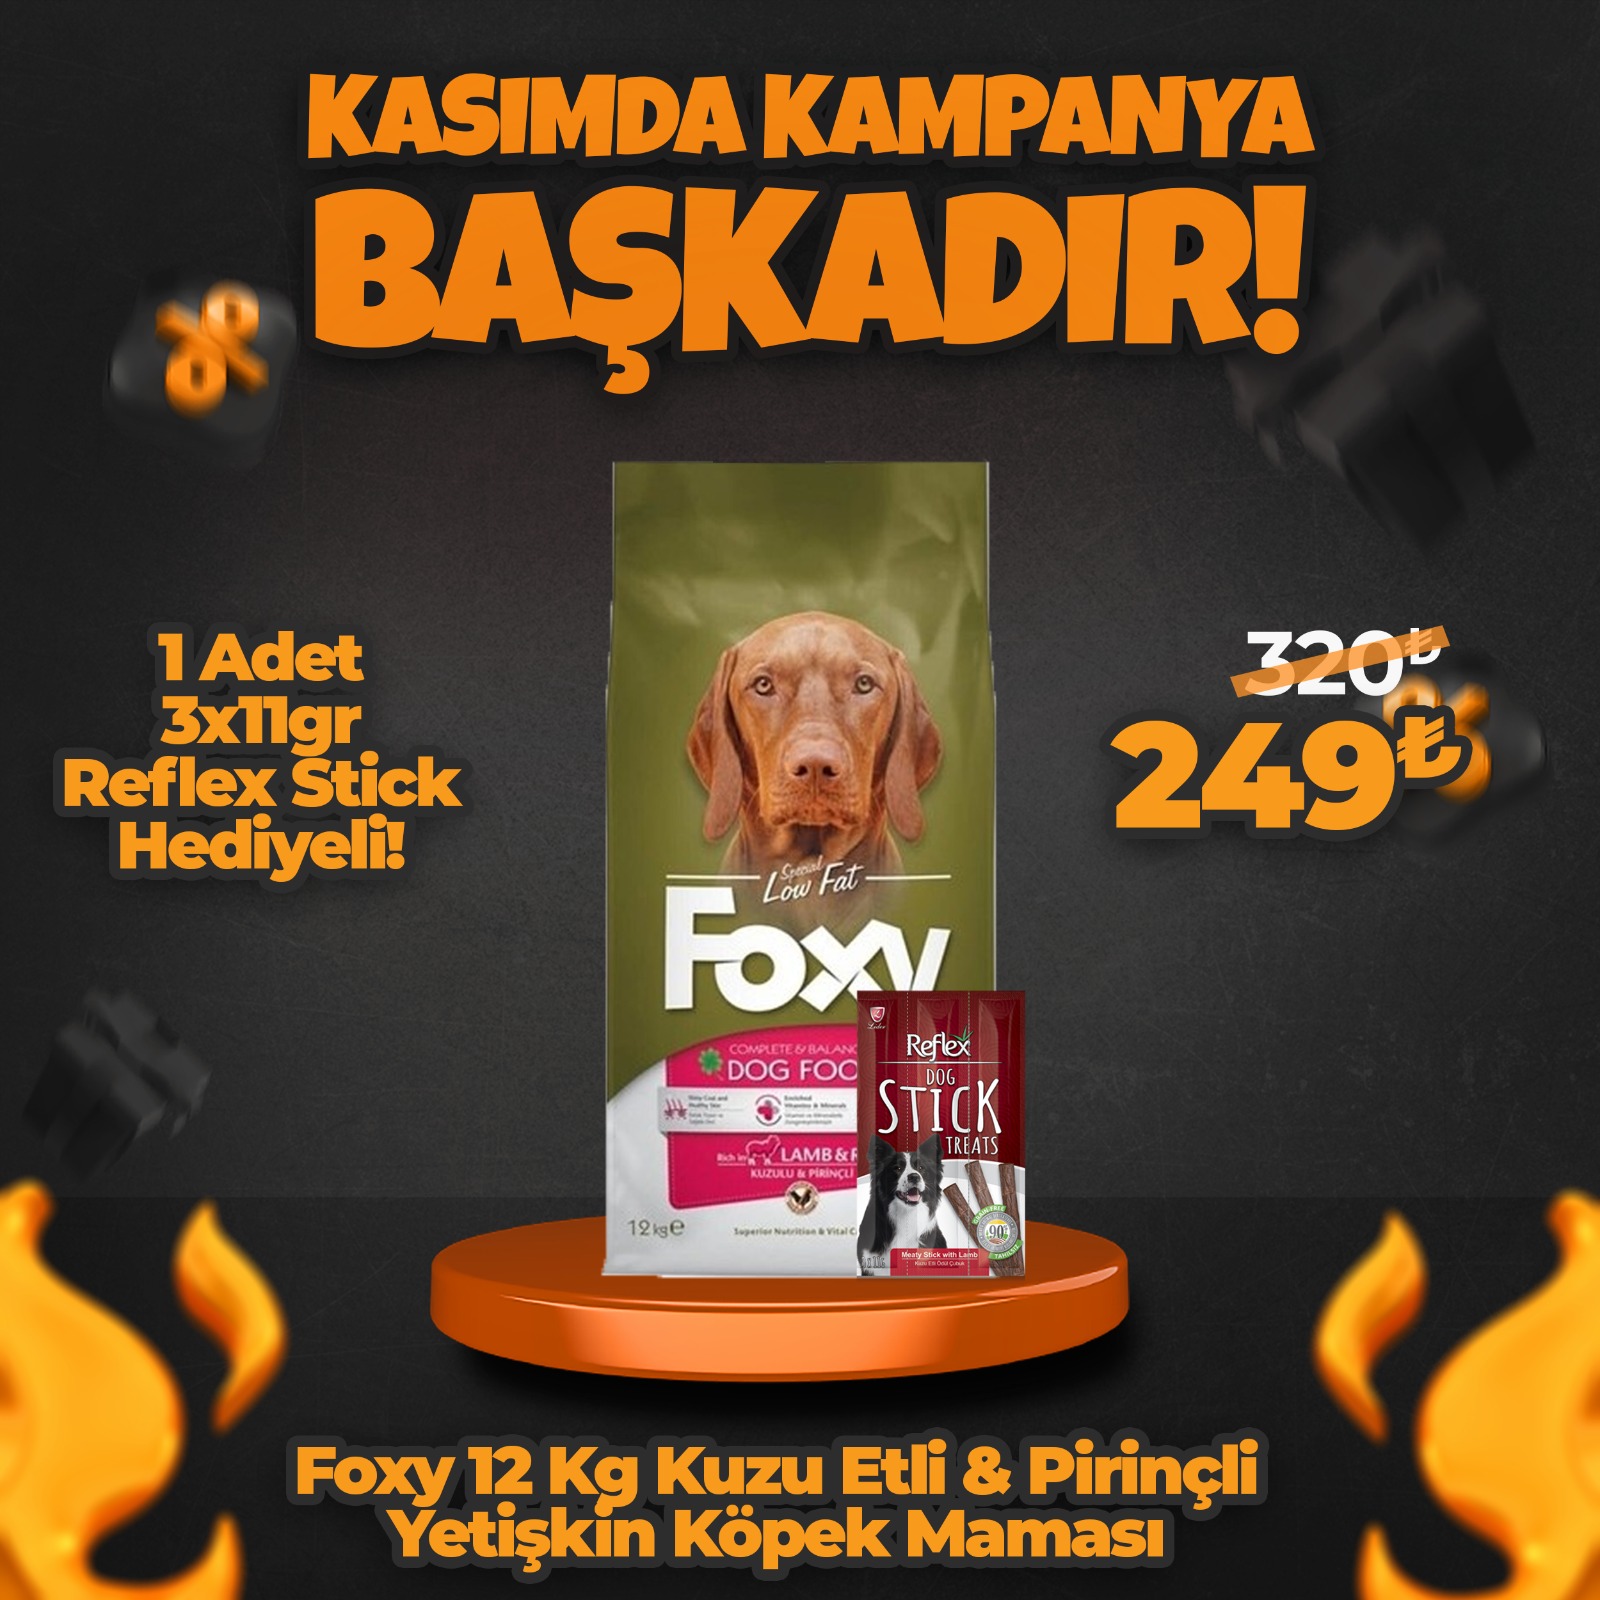 Foxy 12 Kg Kuzu Etli Yetişkin Köpek Maması + 1 Adet 3x11gr Reflex Stick Hediyeli